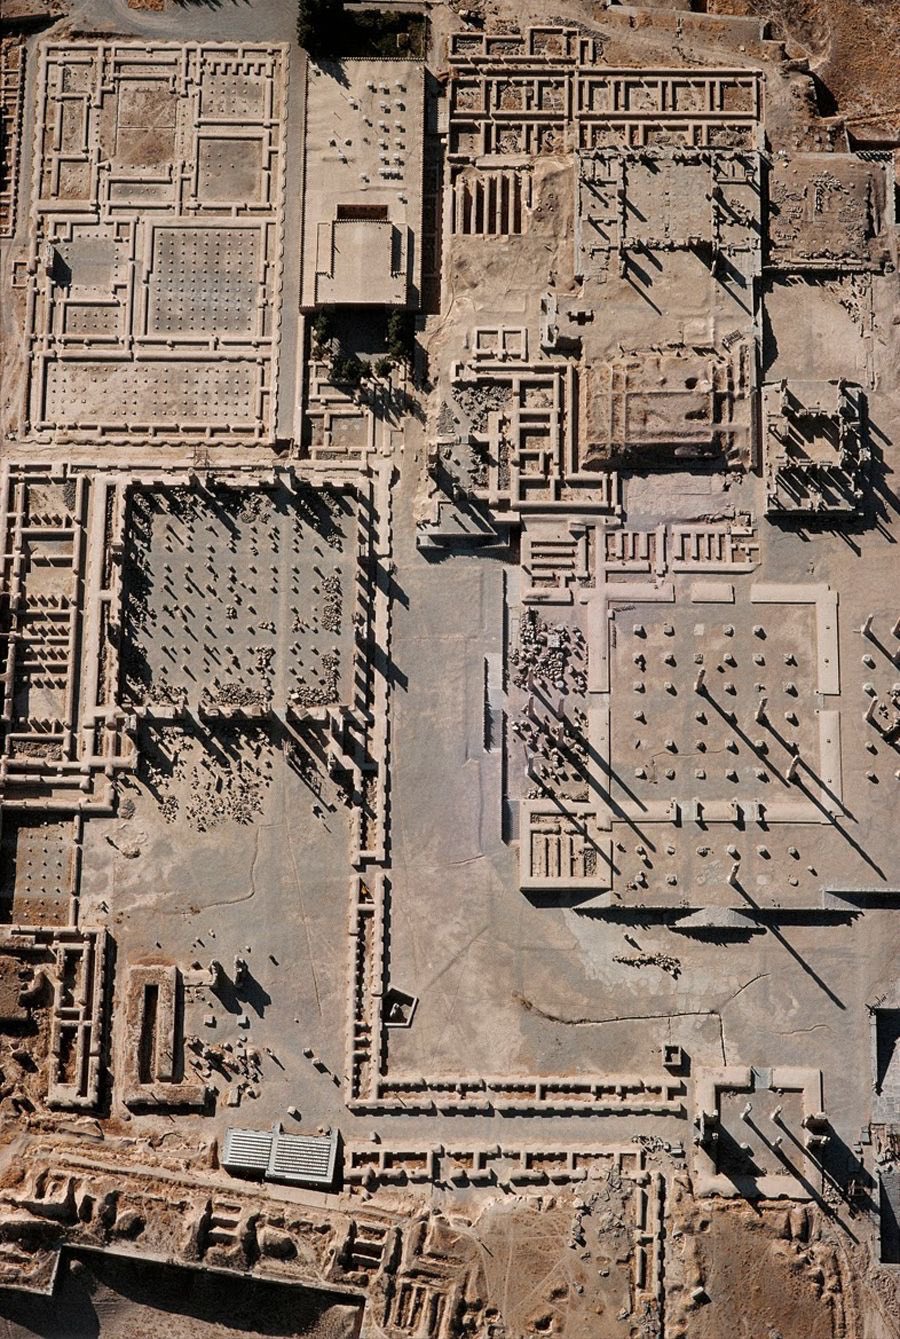 公元前546年，居鲁士Cyrus建立了帕萨加代Pasargadae作为他的首都，把它作为商队向北穿越大盐沙漠路线的起点之一。这座城市的行政核心以其宽敞而著称;宫殿、观众厅、祭坛和亭台楼阁彼此相距遥远，但却与树木、水道和花园融为一体，构成了一个公园般的环境。埃及人和巴比伦人有宫殿花园，但如此广阔的宫殿、花园和果园的景观是相当新颖的。这也是一个神圣的景观，因为在北面有一个神圣的围墙，由一个带围墙的区域和一系列支持开放祭坛的平台组成。很久以后，波斯花园成为伊斯兰花园的原型。居鲁士大帝的陵墓位于离帕萨加代不远的地方。它的地窖有6米高，坐落在一个6级台阶基座上，基座长13.5米，宽12.2米。整个13米高的大厦是由白色石灰石建成的。五块巨大的倾斜的石头构成了屋顶。纪念碑大胆地坐落在风景之中，是一座优雅的坟墓和圣所的结合。这座建筑让人想起类似的希腊爱奥尼亚墓群，不过规模要小一些。它可能被一个院子围了起来。